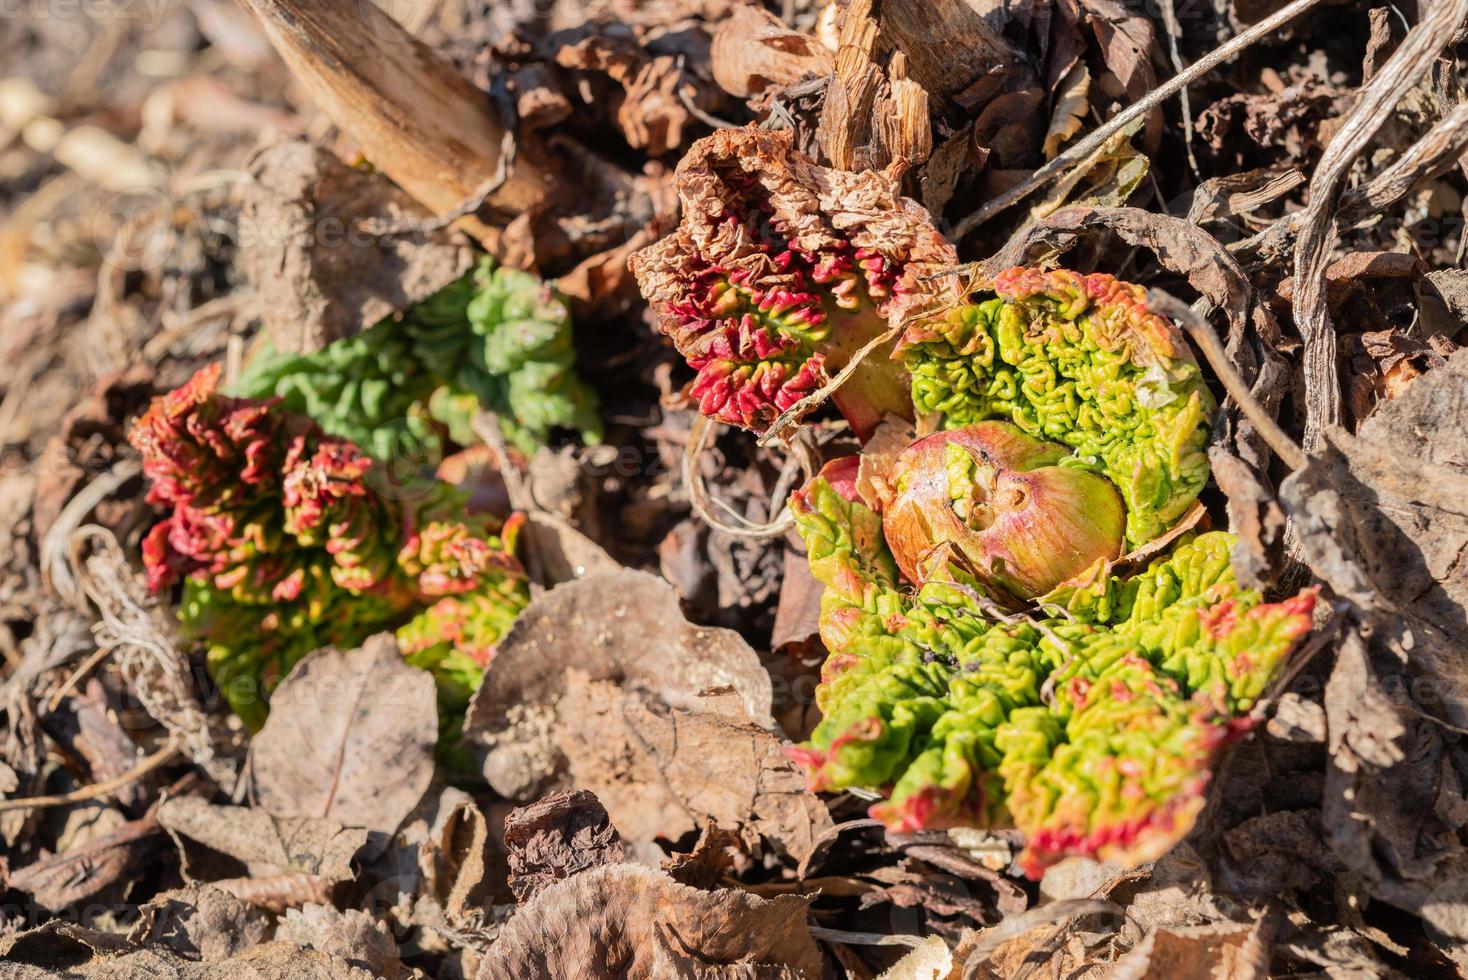 ruibarbo, reuma rabárbaro, coronas emergente desde el suelo en temprano primavera. joven dispara de el comestible ruibarbo planta foto